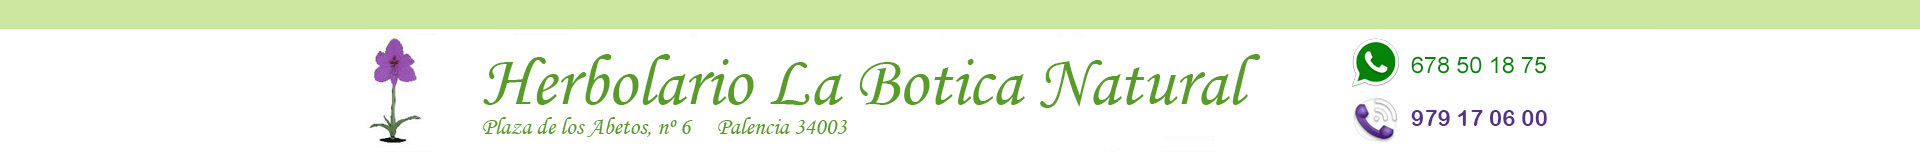 Limpieza hogar ecológica, Herbolario online, Palencia, La Botica Natural